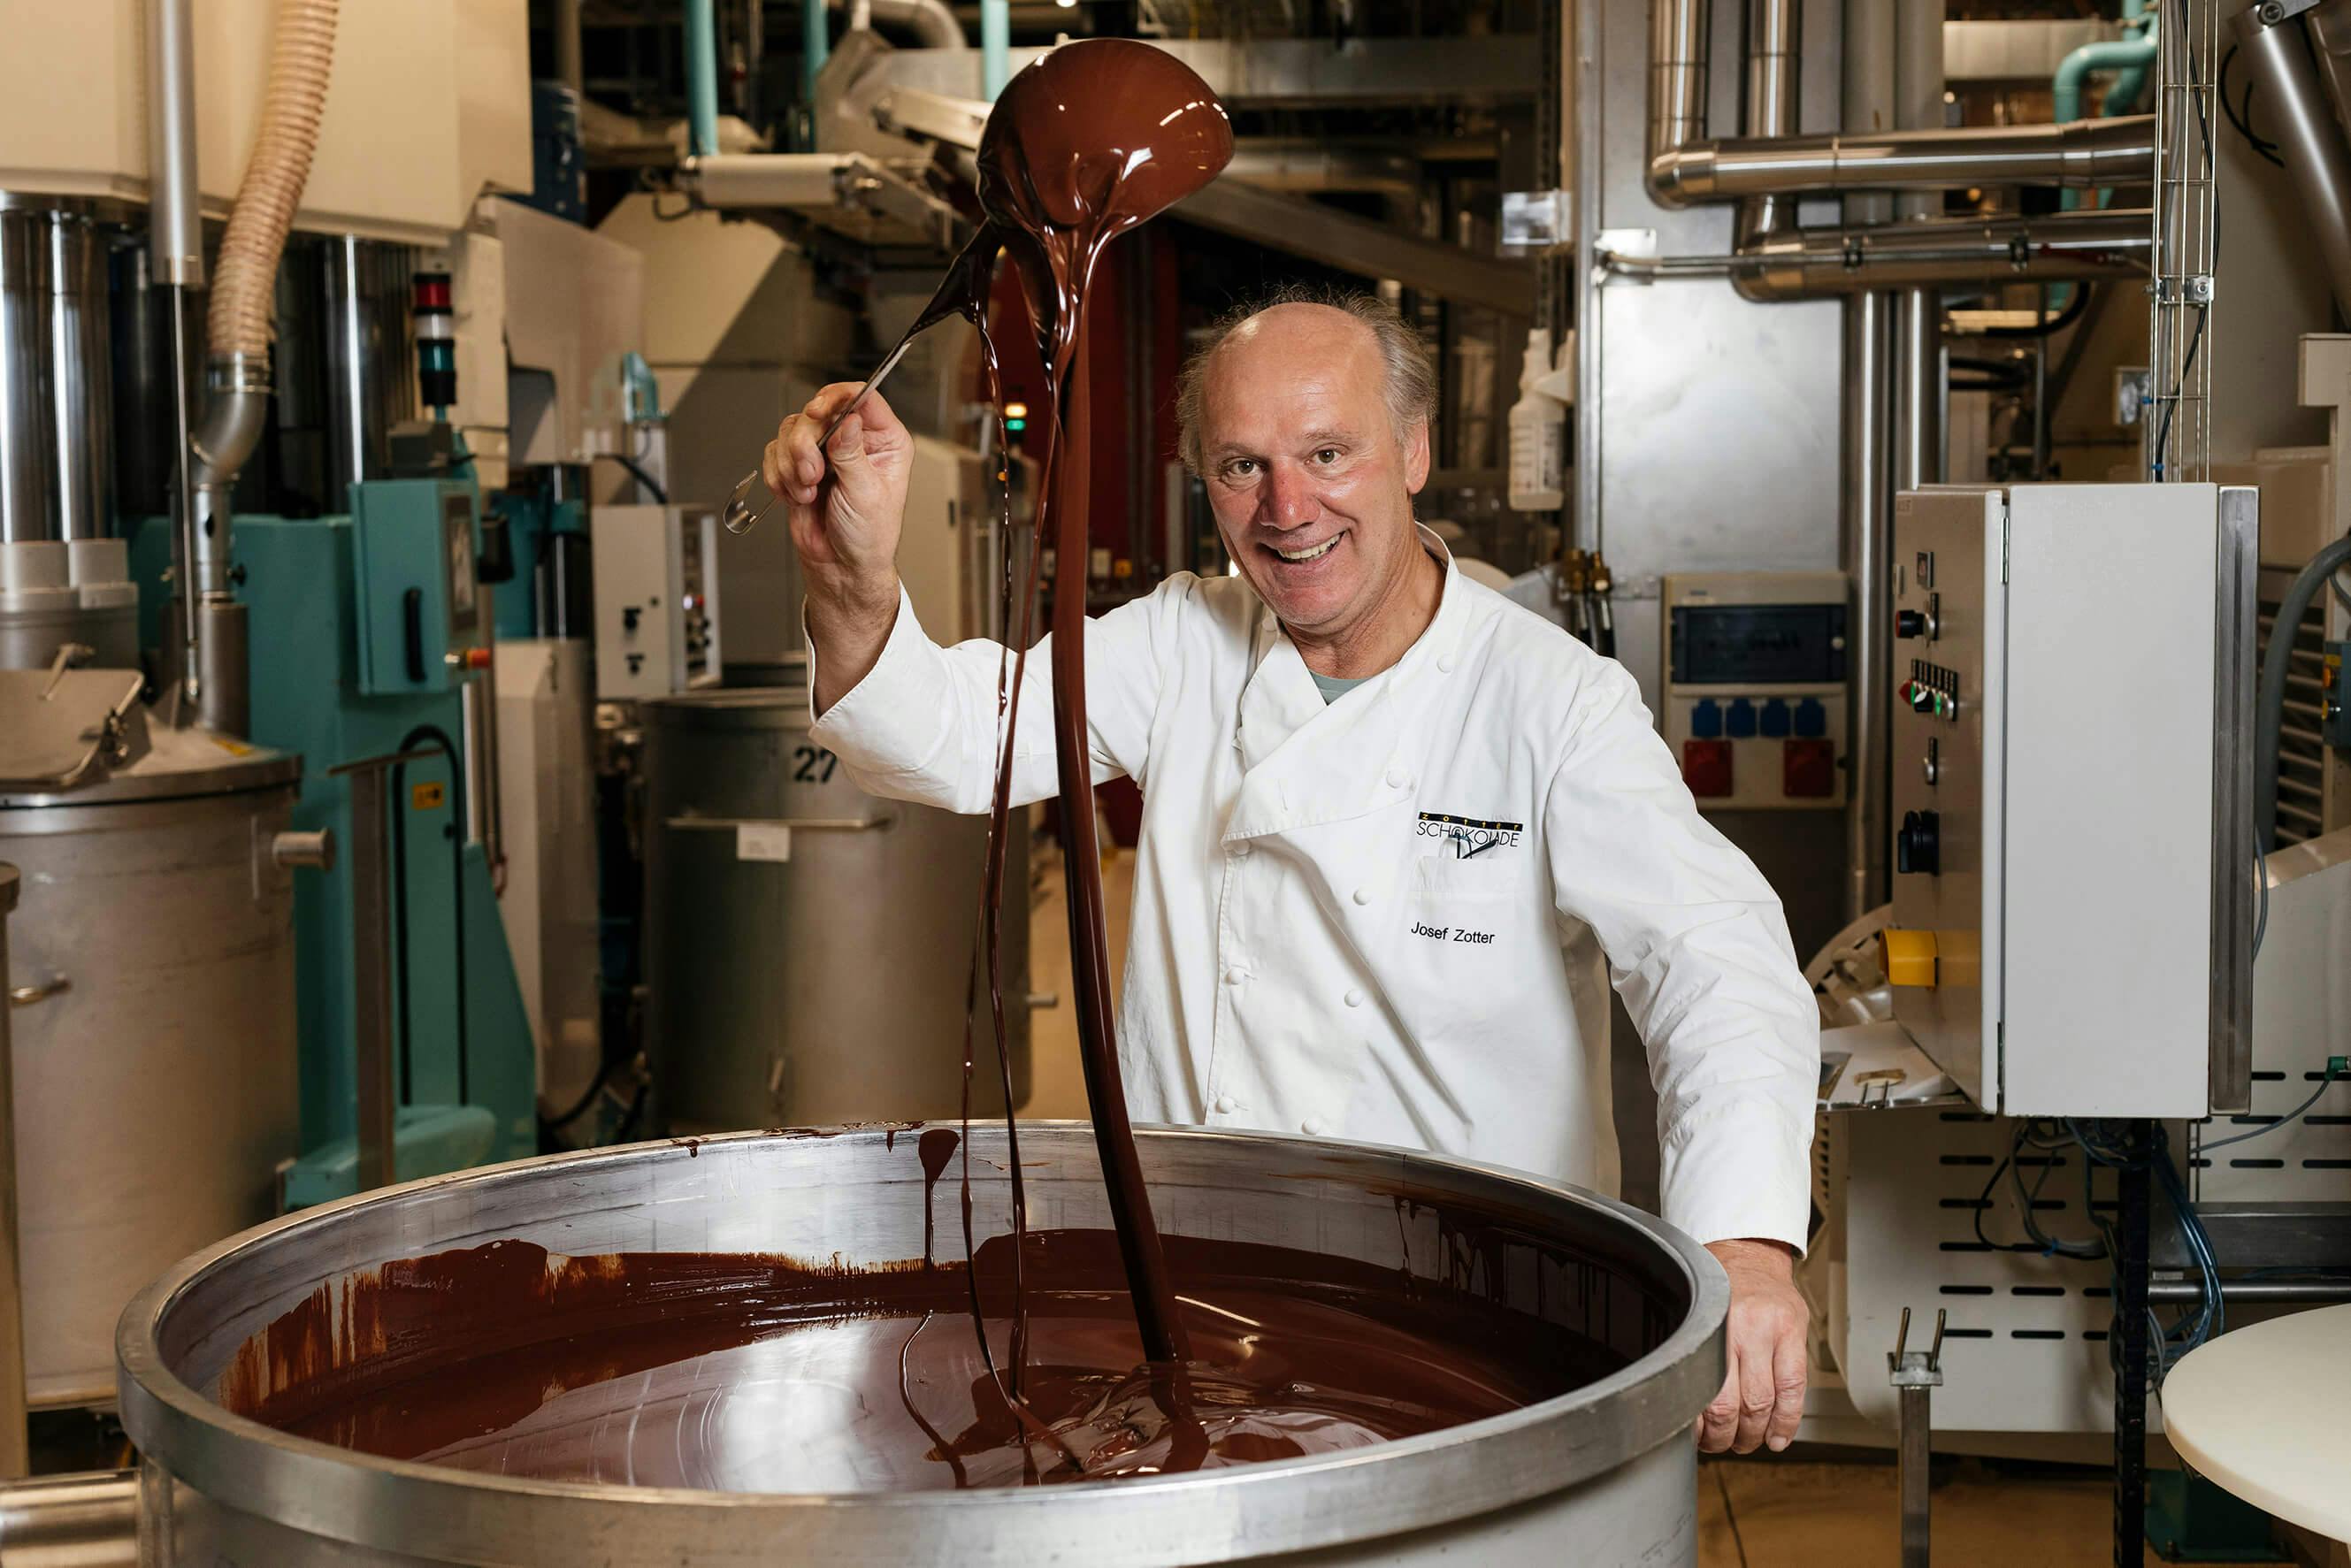 Herr Zotter mit einem Topf voller Schokolade.